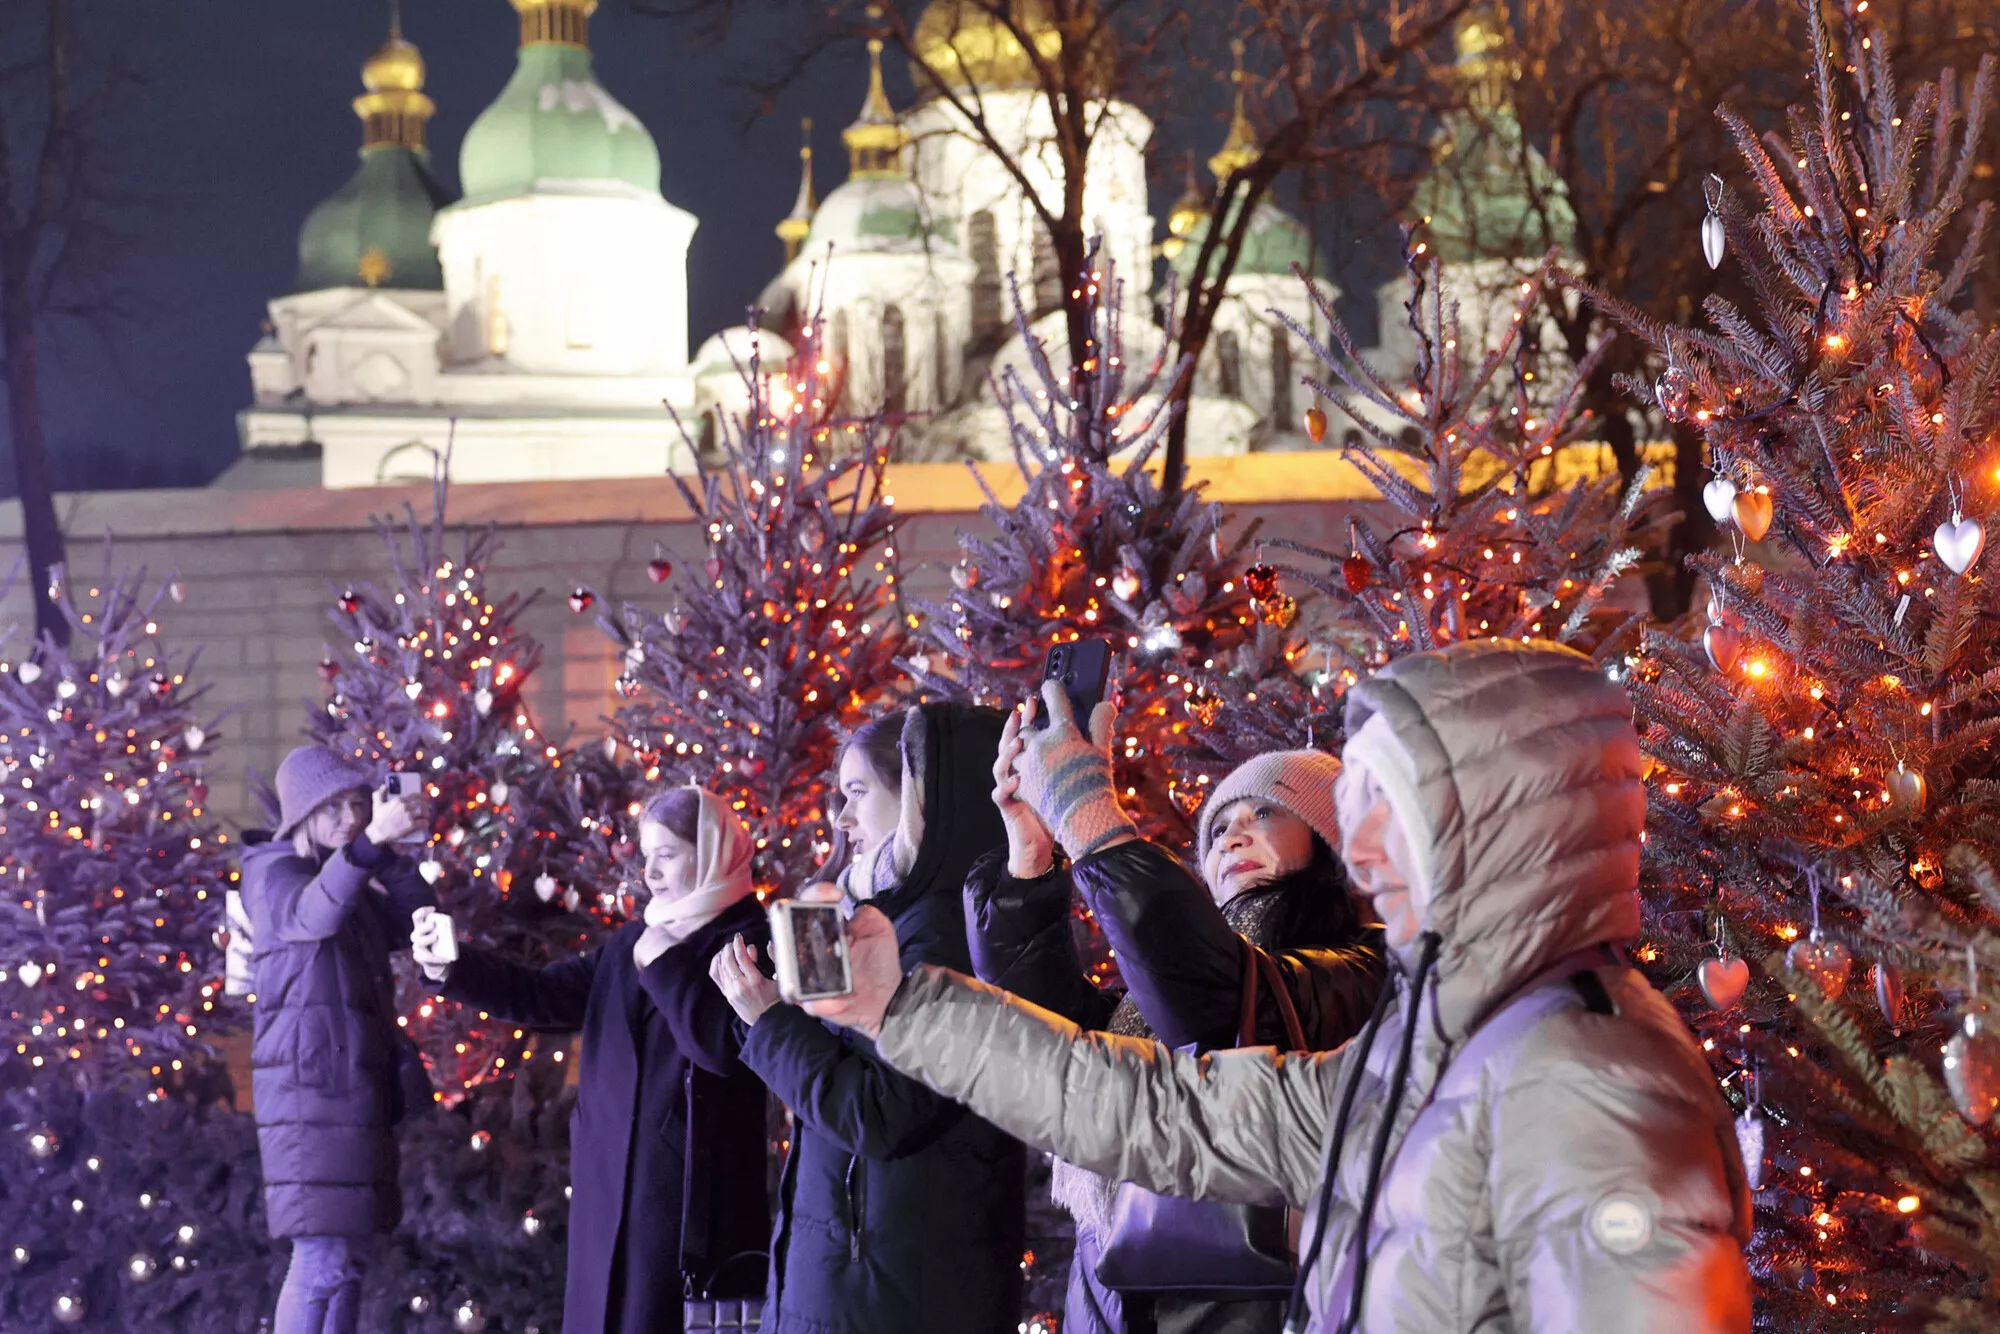 Joulukuusi pystytettiin Kiovassa Pyhän Sofian aukiolle uuden kalenterin mukaisesti 6. joulukuuta eli aiempia vuosia aikaisemmin. Kuusen teema on ”rohkeat sydämet”, ja se on omistettu Ukrainan puolustajille.